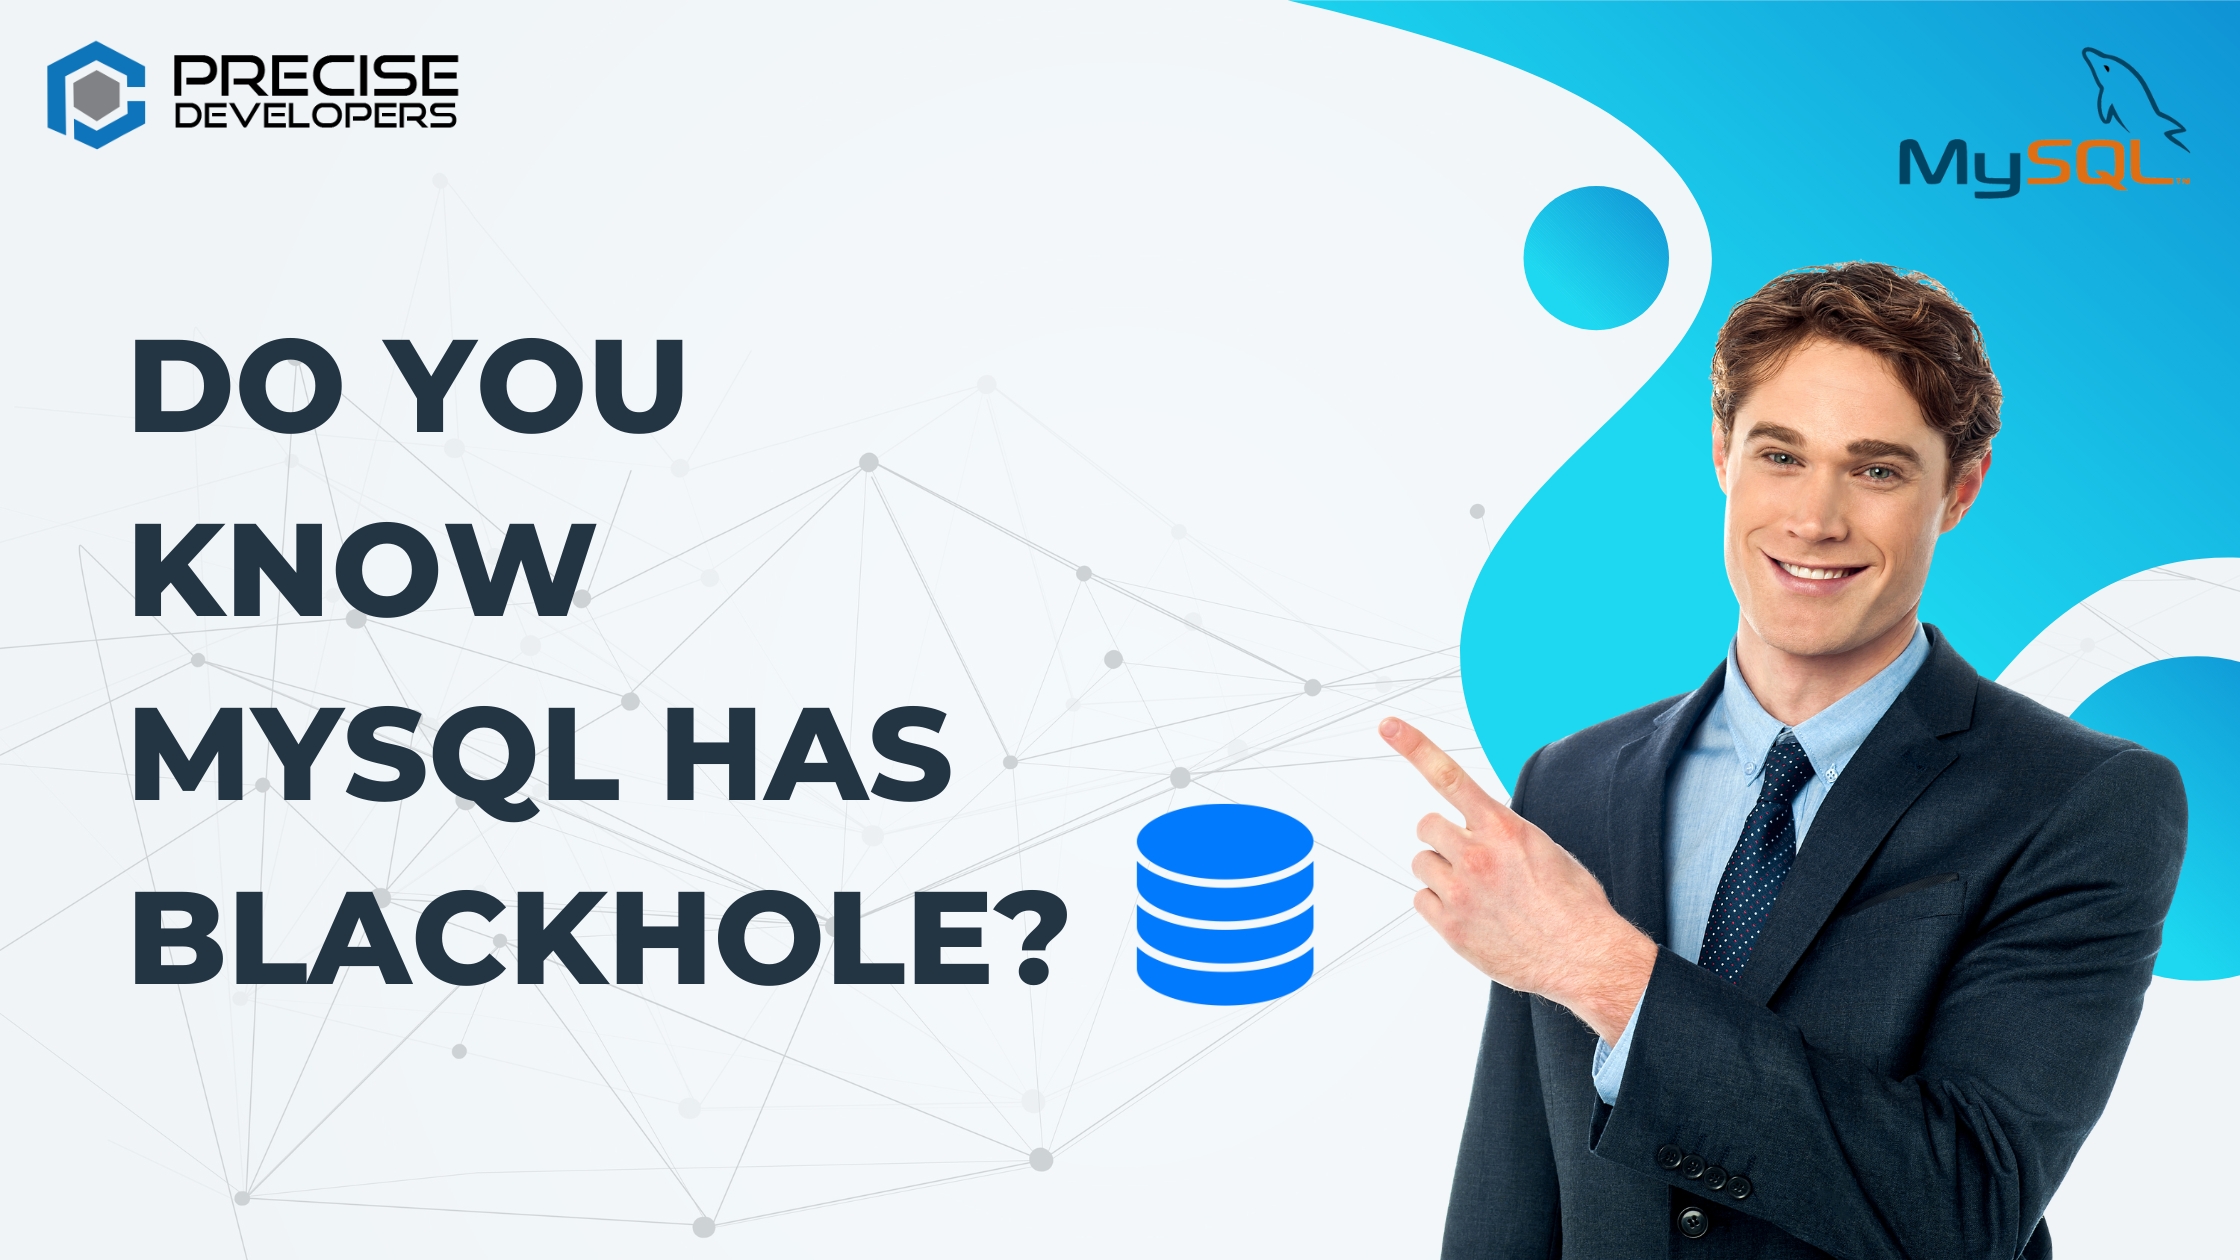 Do you know MySQL has Blackhole Precise Developers